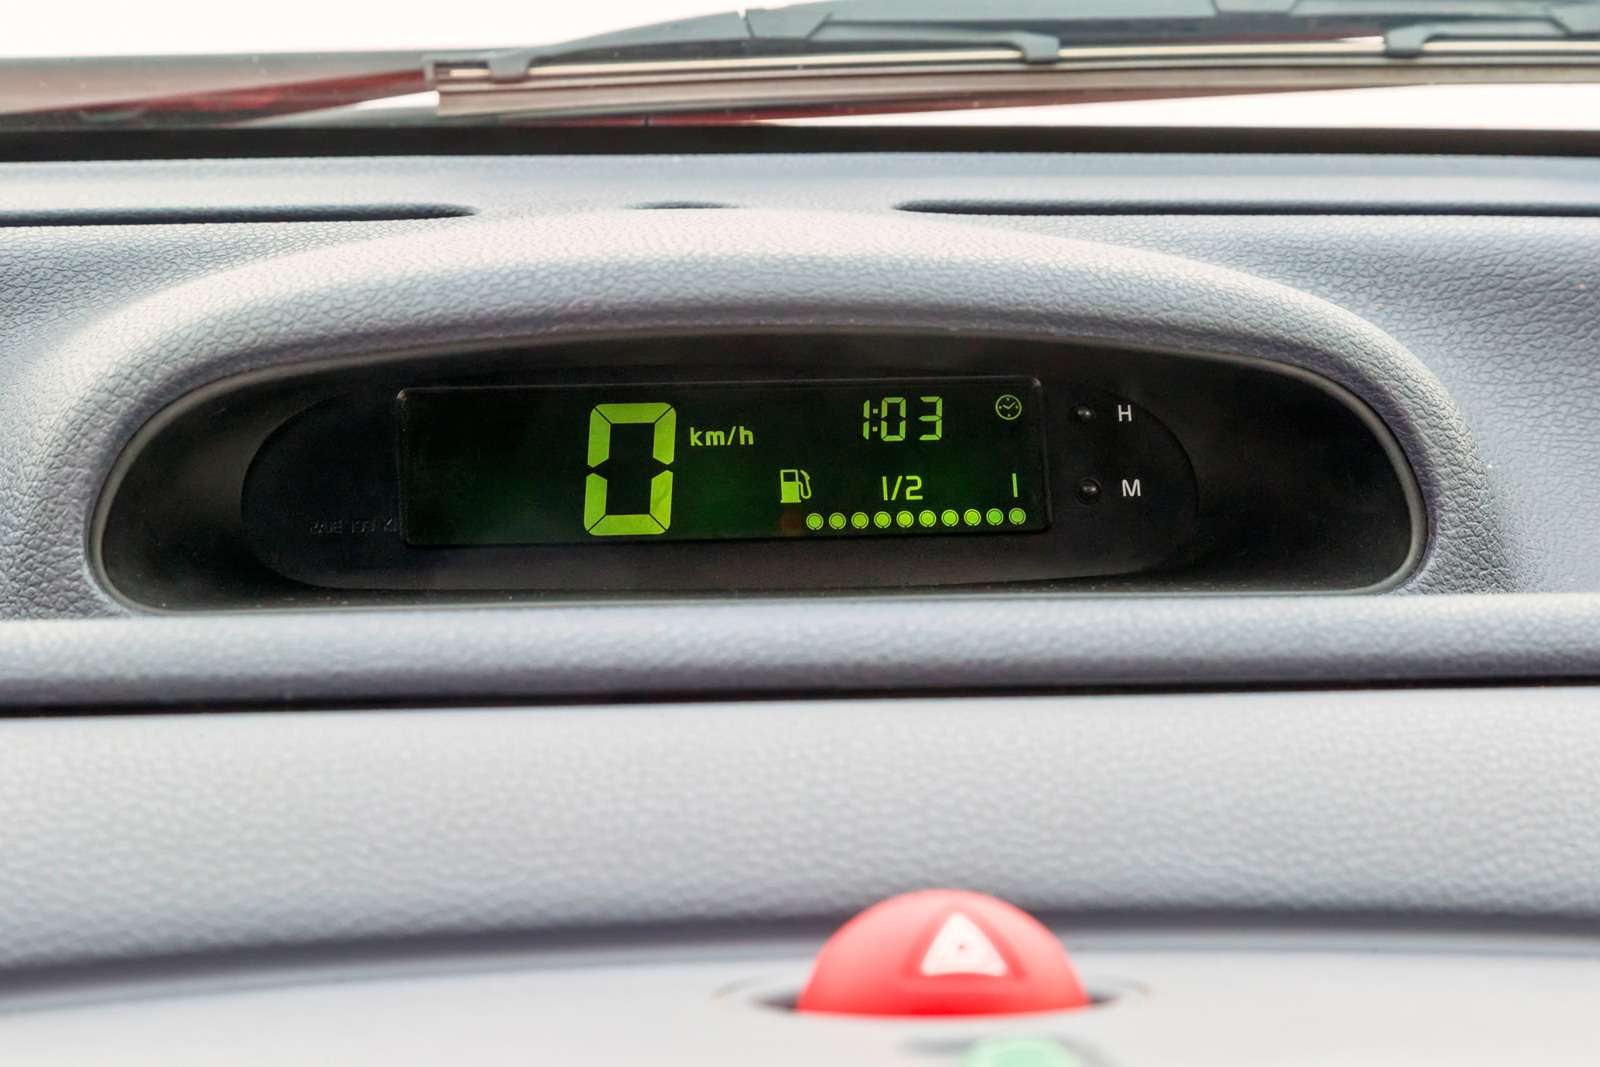 Renault Twingo. Основная информация – на маленьком дисплейчике под лобовым стеклом. Скорость и уровень топлива видны? Уже хорошо!